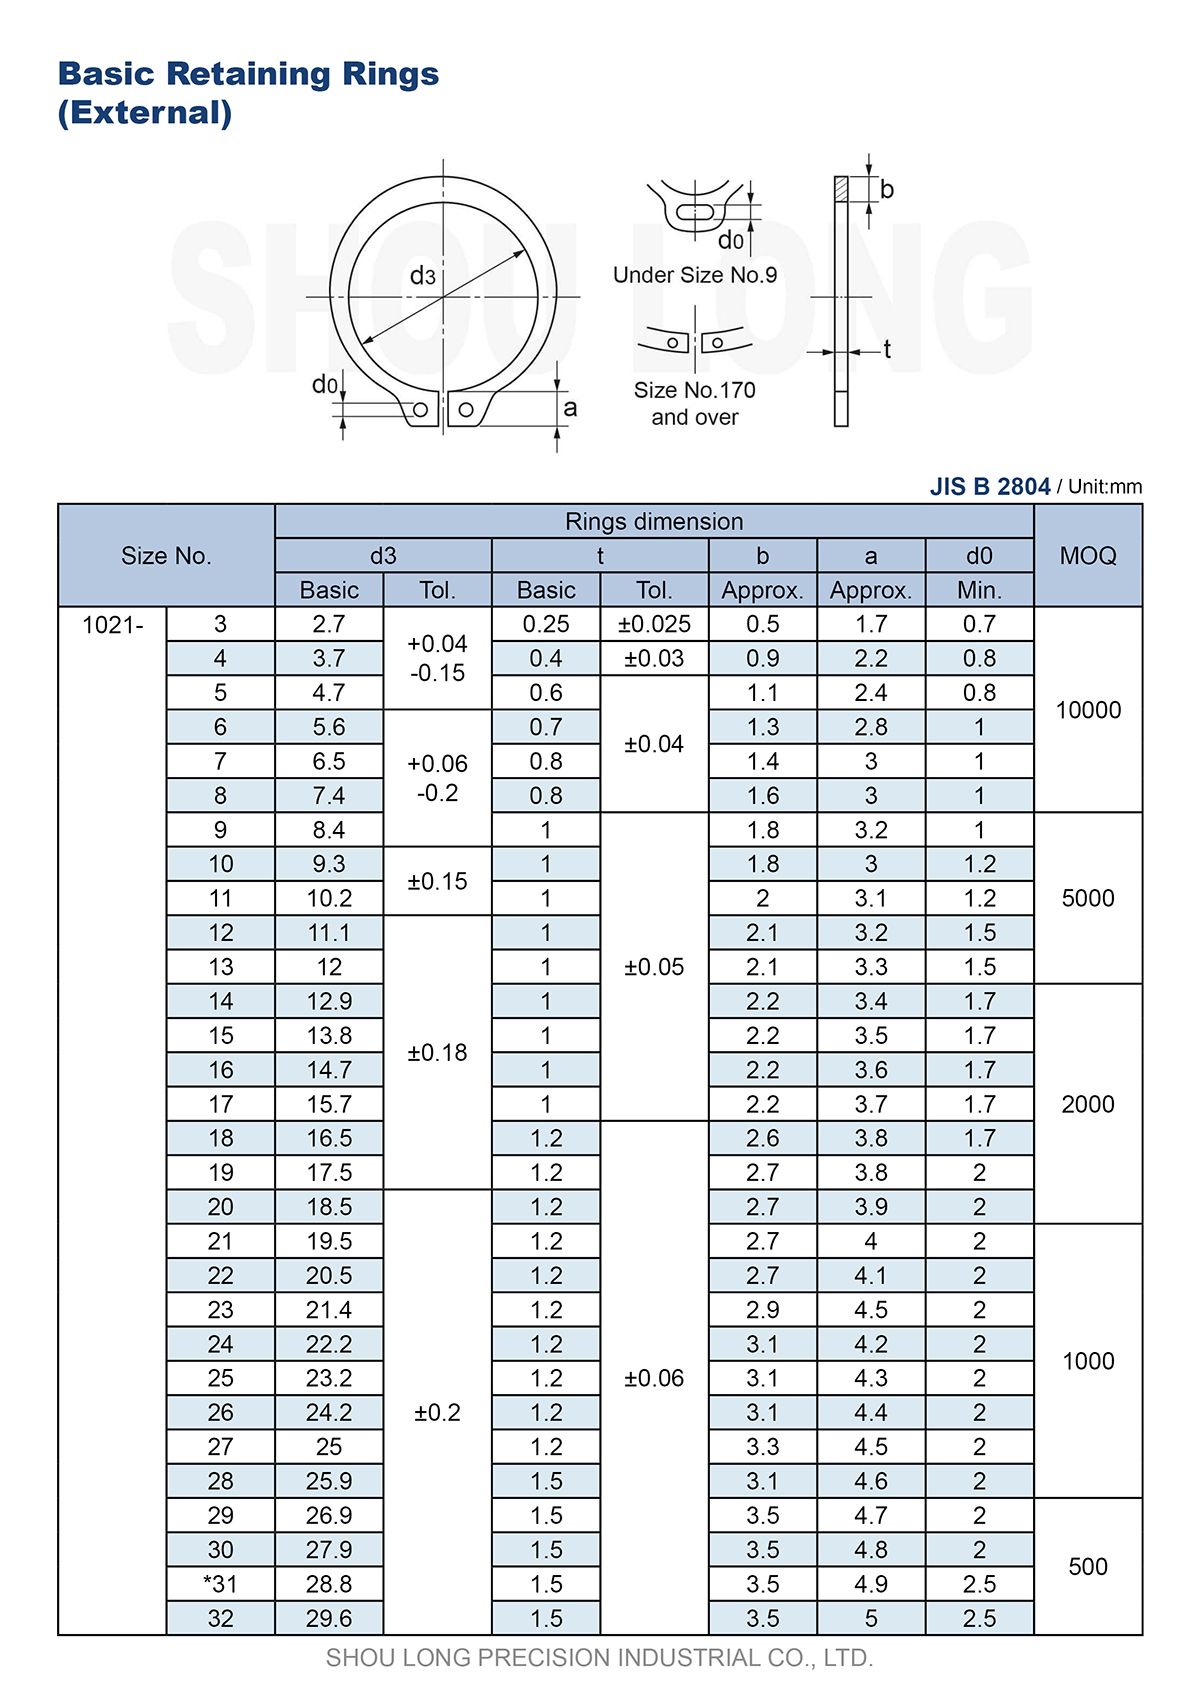 مواصفات حلقات الاحتفاظ الأساسية بالمقاسات المترية للعمود B2804-1 بمواصفات JIS